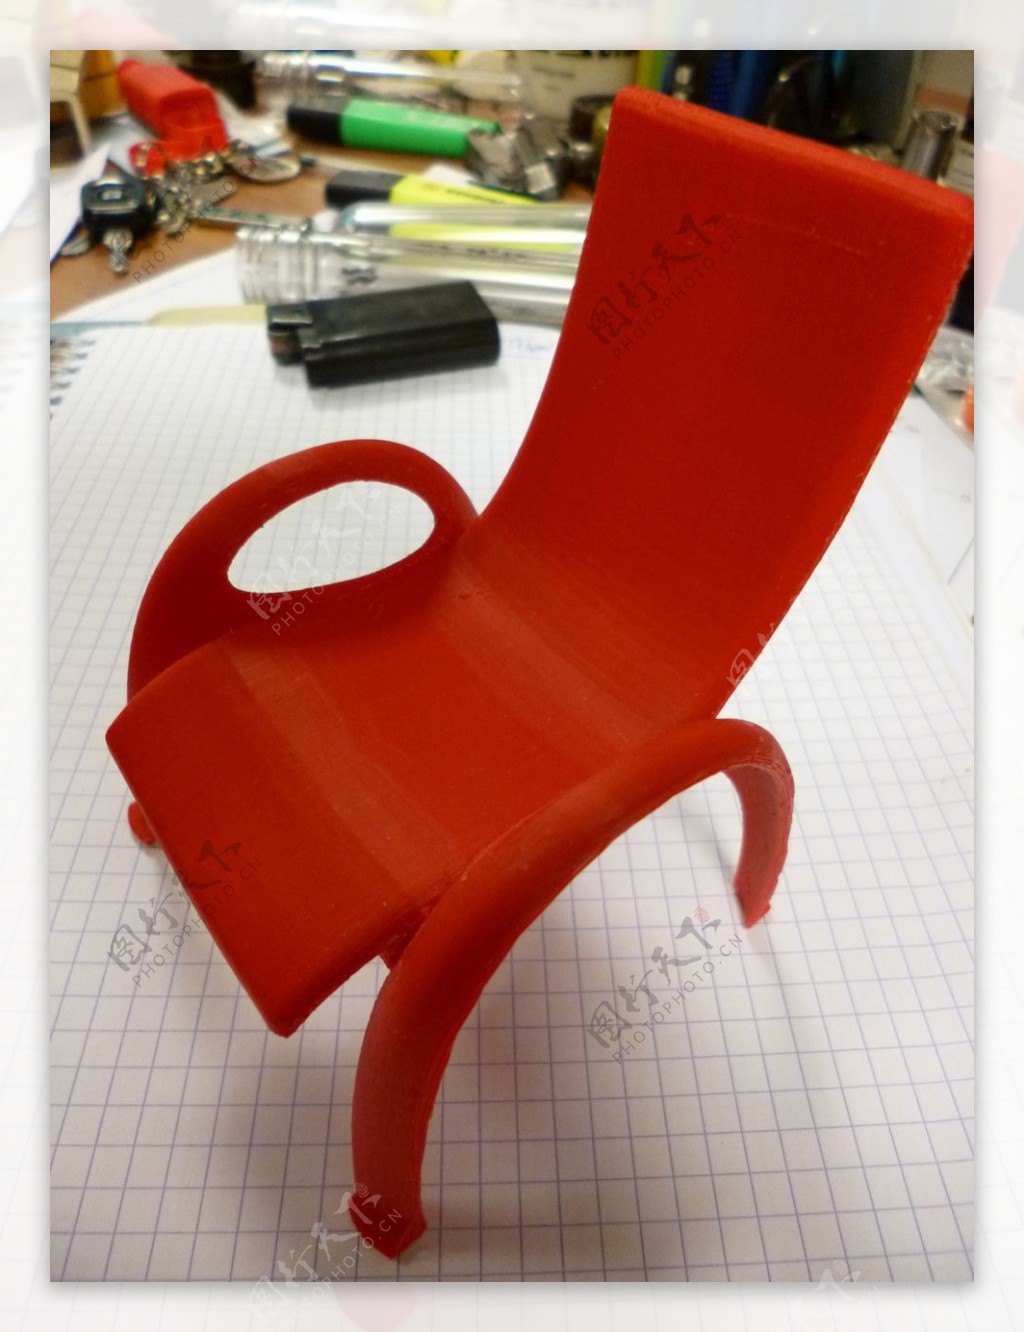 傻瓜花园椅3D打印